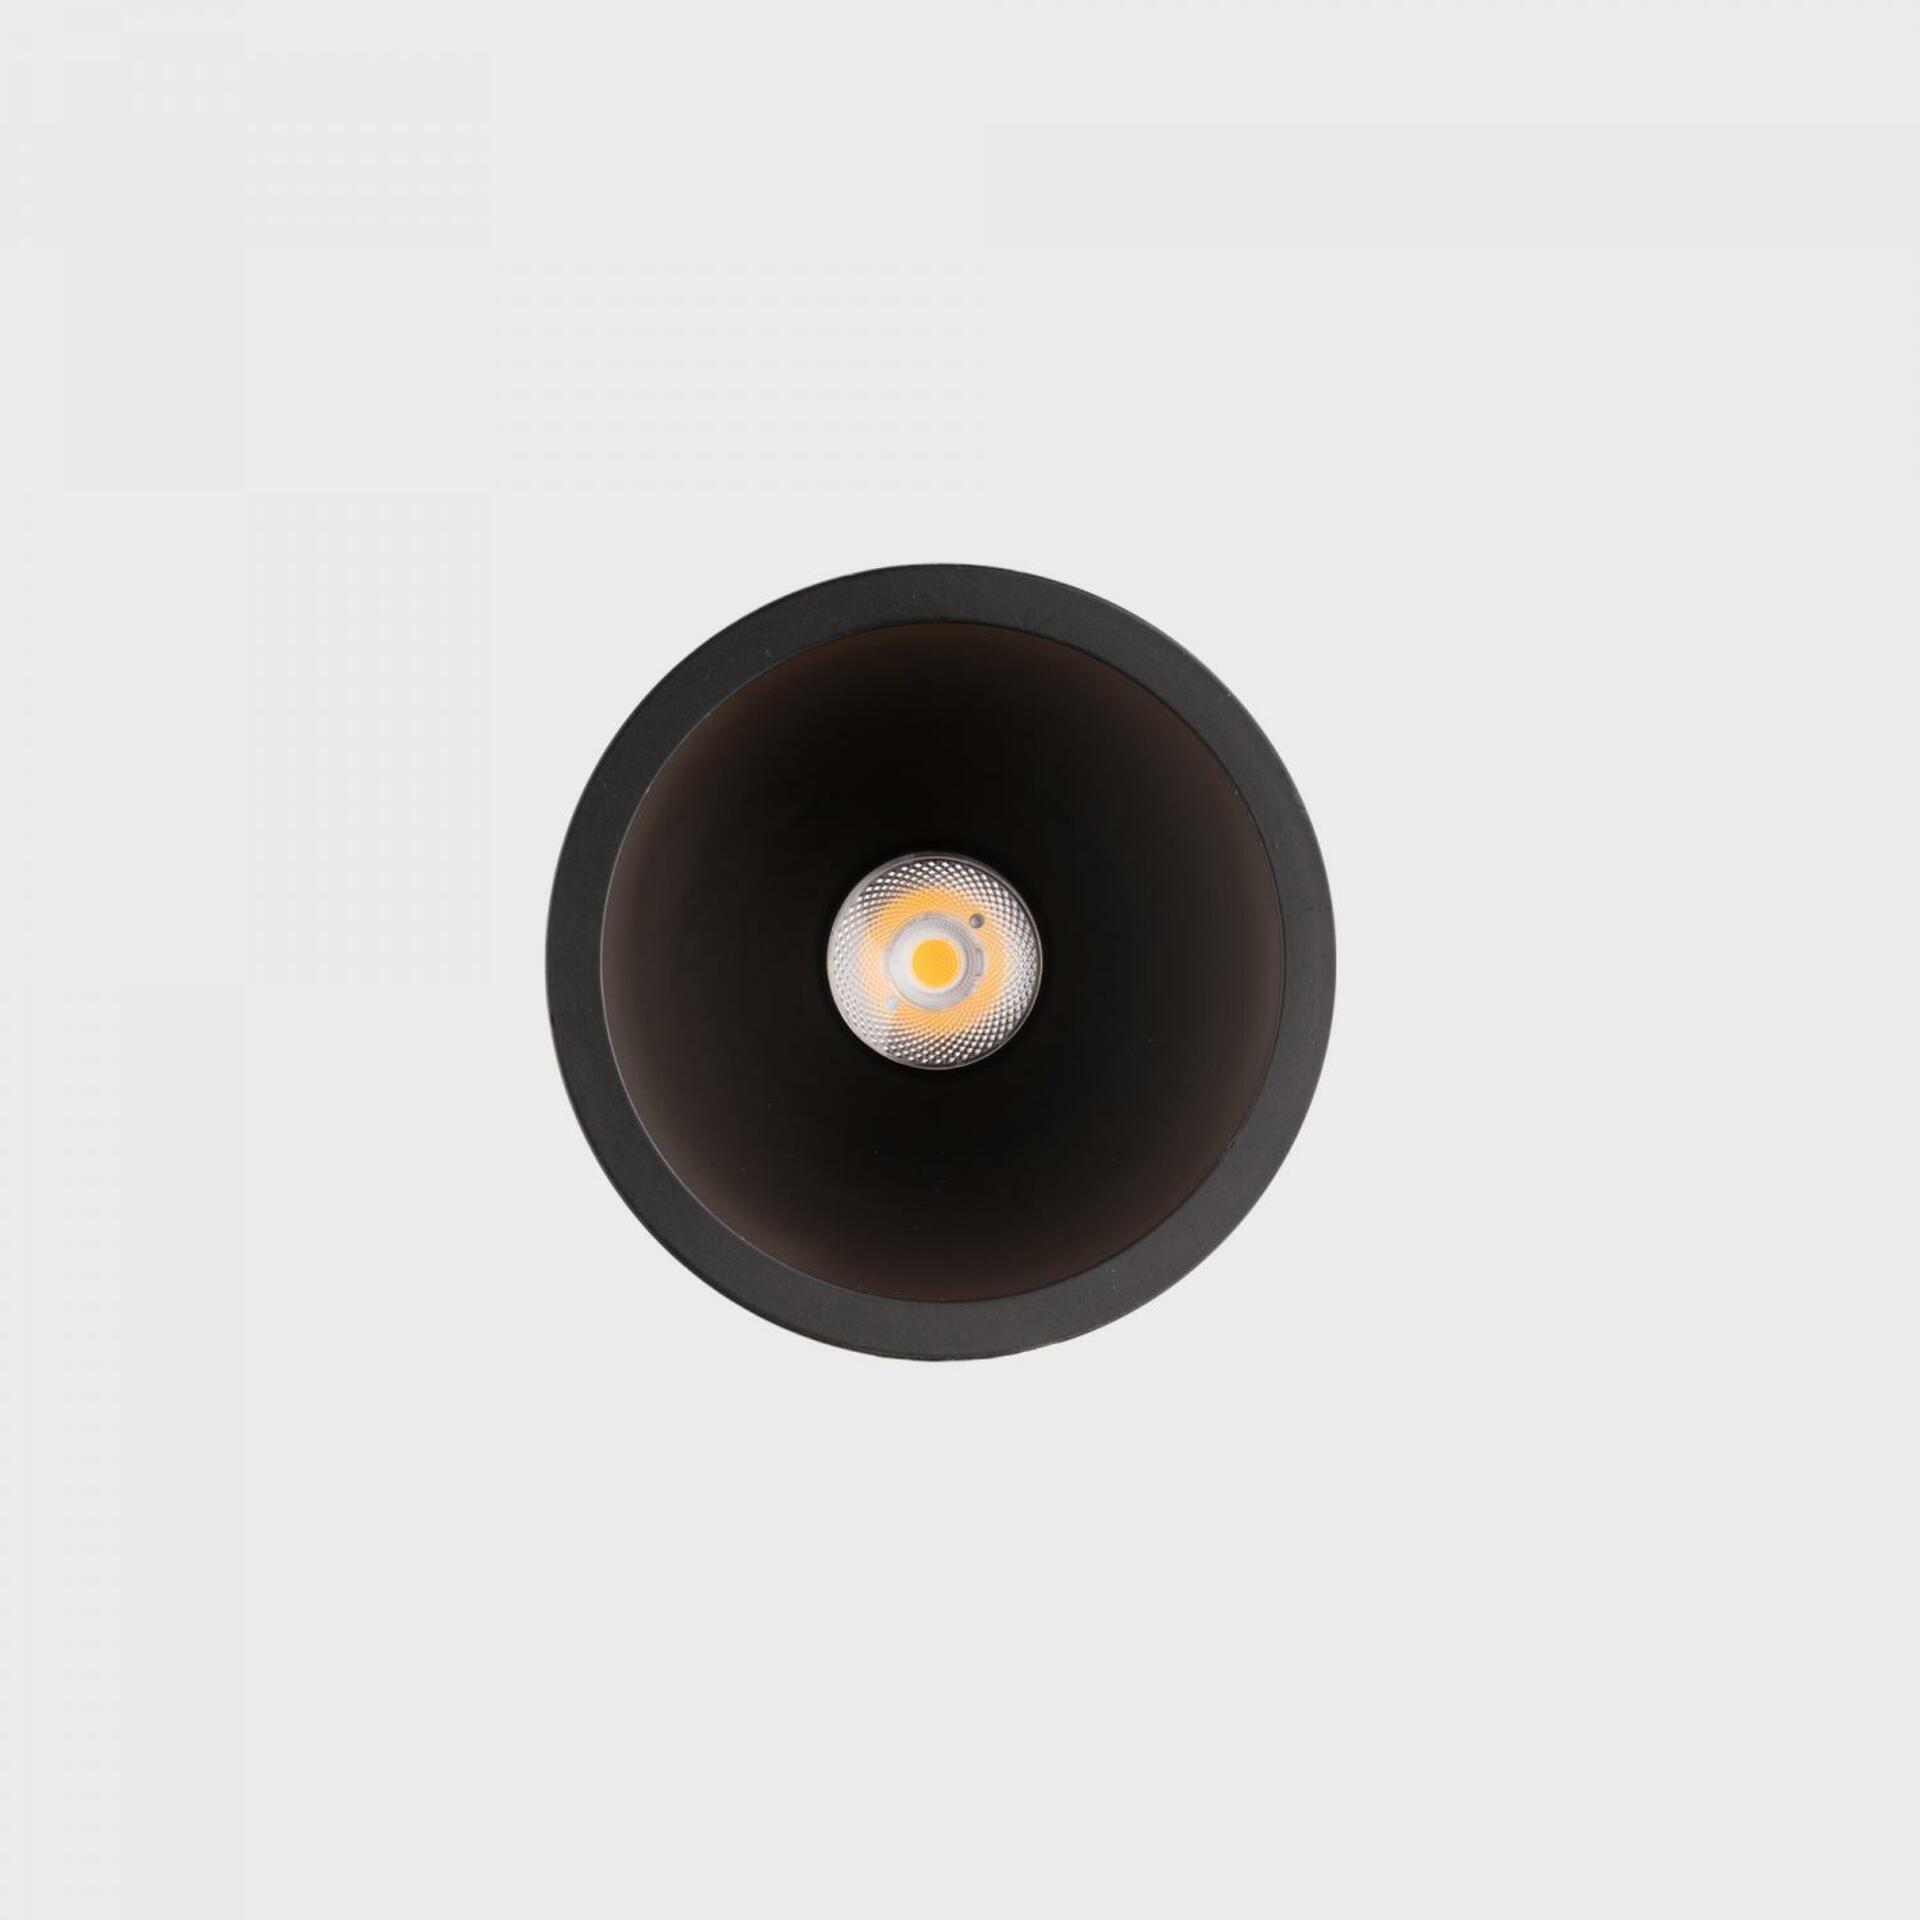 KOHL LIGHTING KOHL-Lighting NOON zapuštěné svítidlo s rámečkem pr. 70 mm černá 38° 5 W  CRI 80 4000K DALI